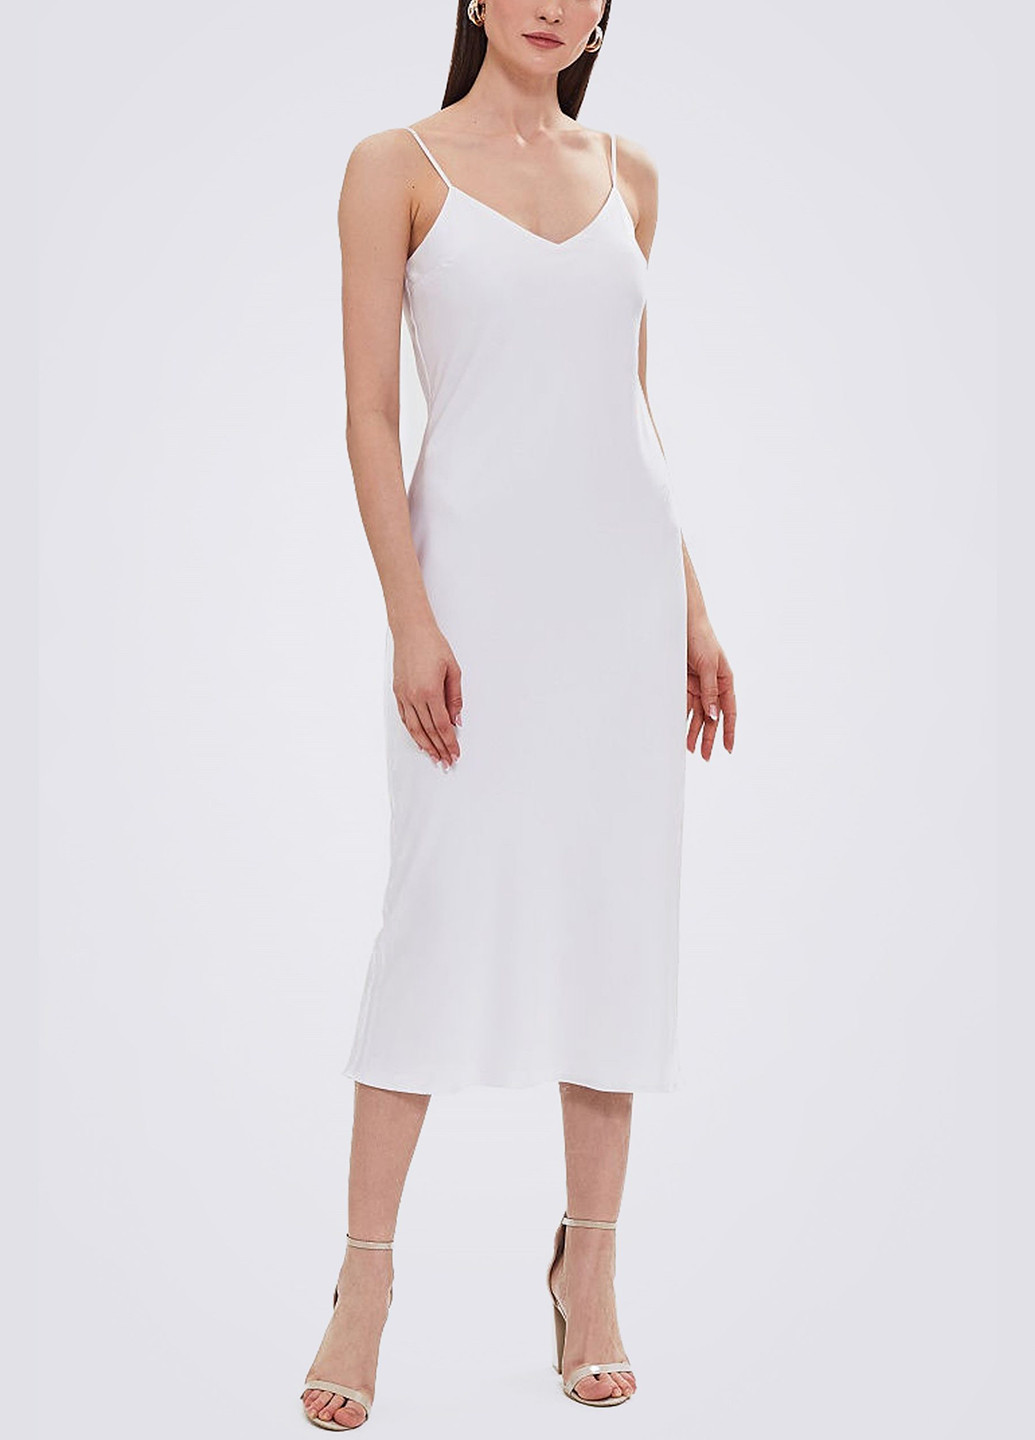 Белое откровенный платье комбинация es.design белое платье-комбинация Egostyle однотонное